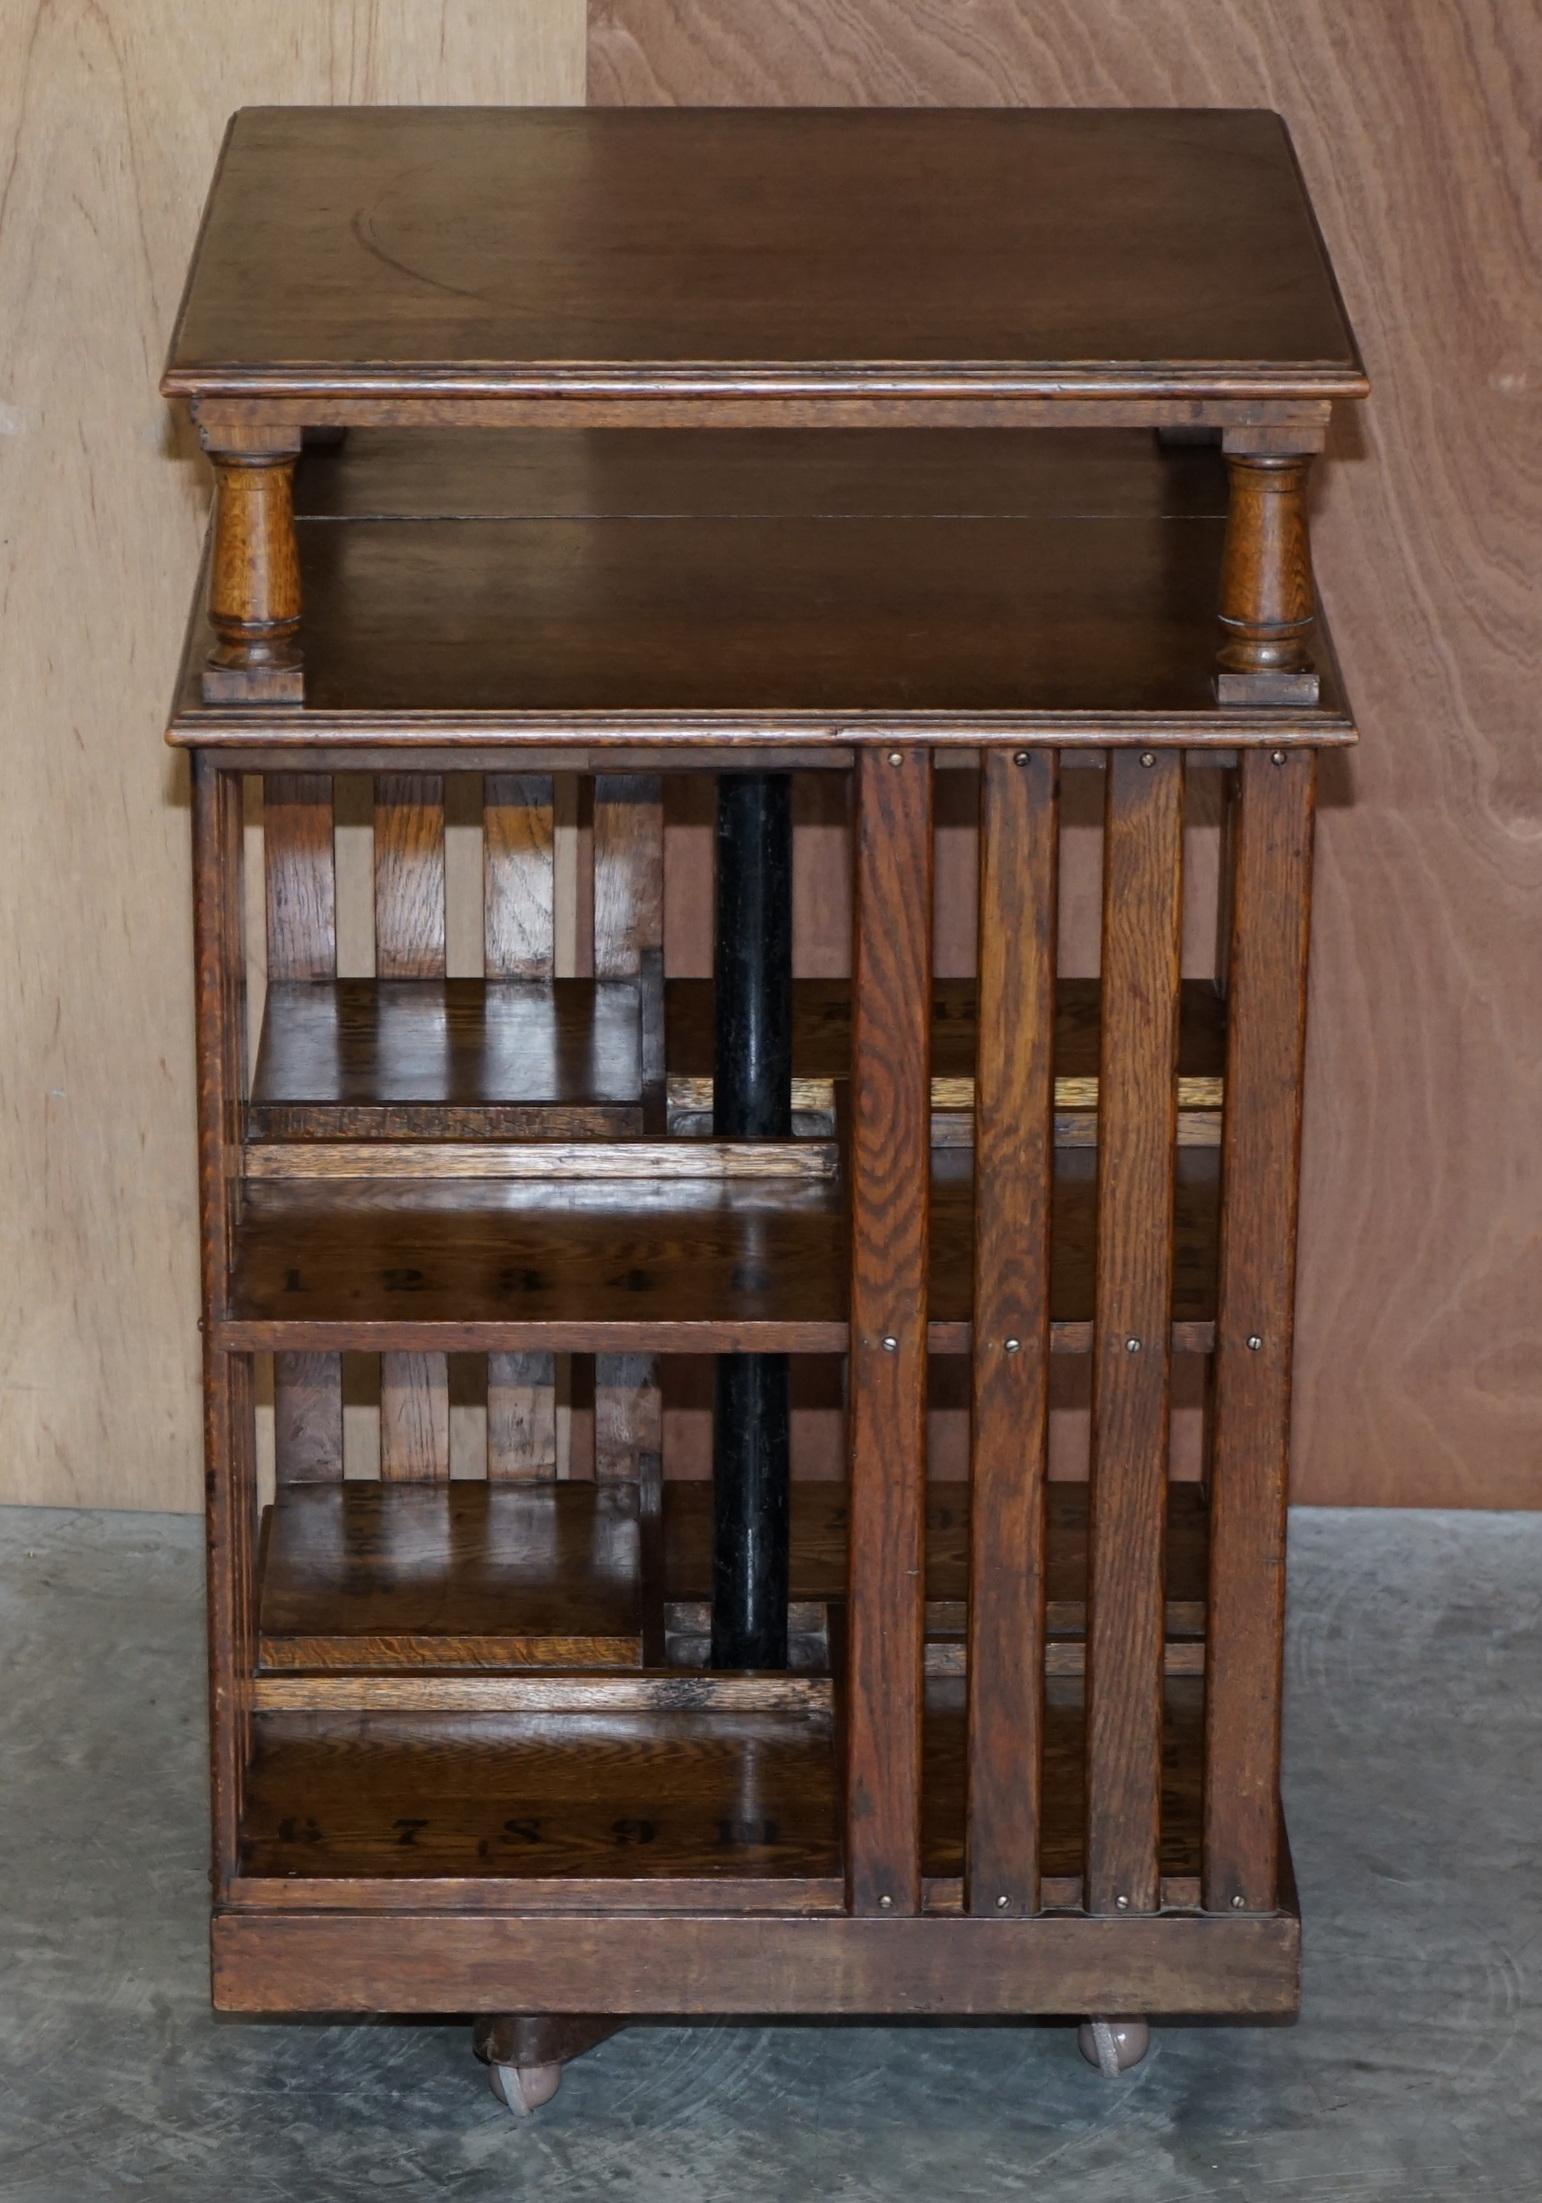 Nous sommes ravis de vous proposer cette très belle table bibliothèque tournante en chêne anglais vers 1880-1900 avec des numéros imprimés sur les étagères. 

Veuillez noter que les frais de livraison indiqués ne sont qu'une indication, ils ne